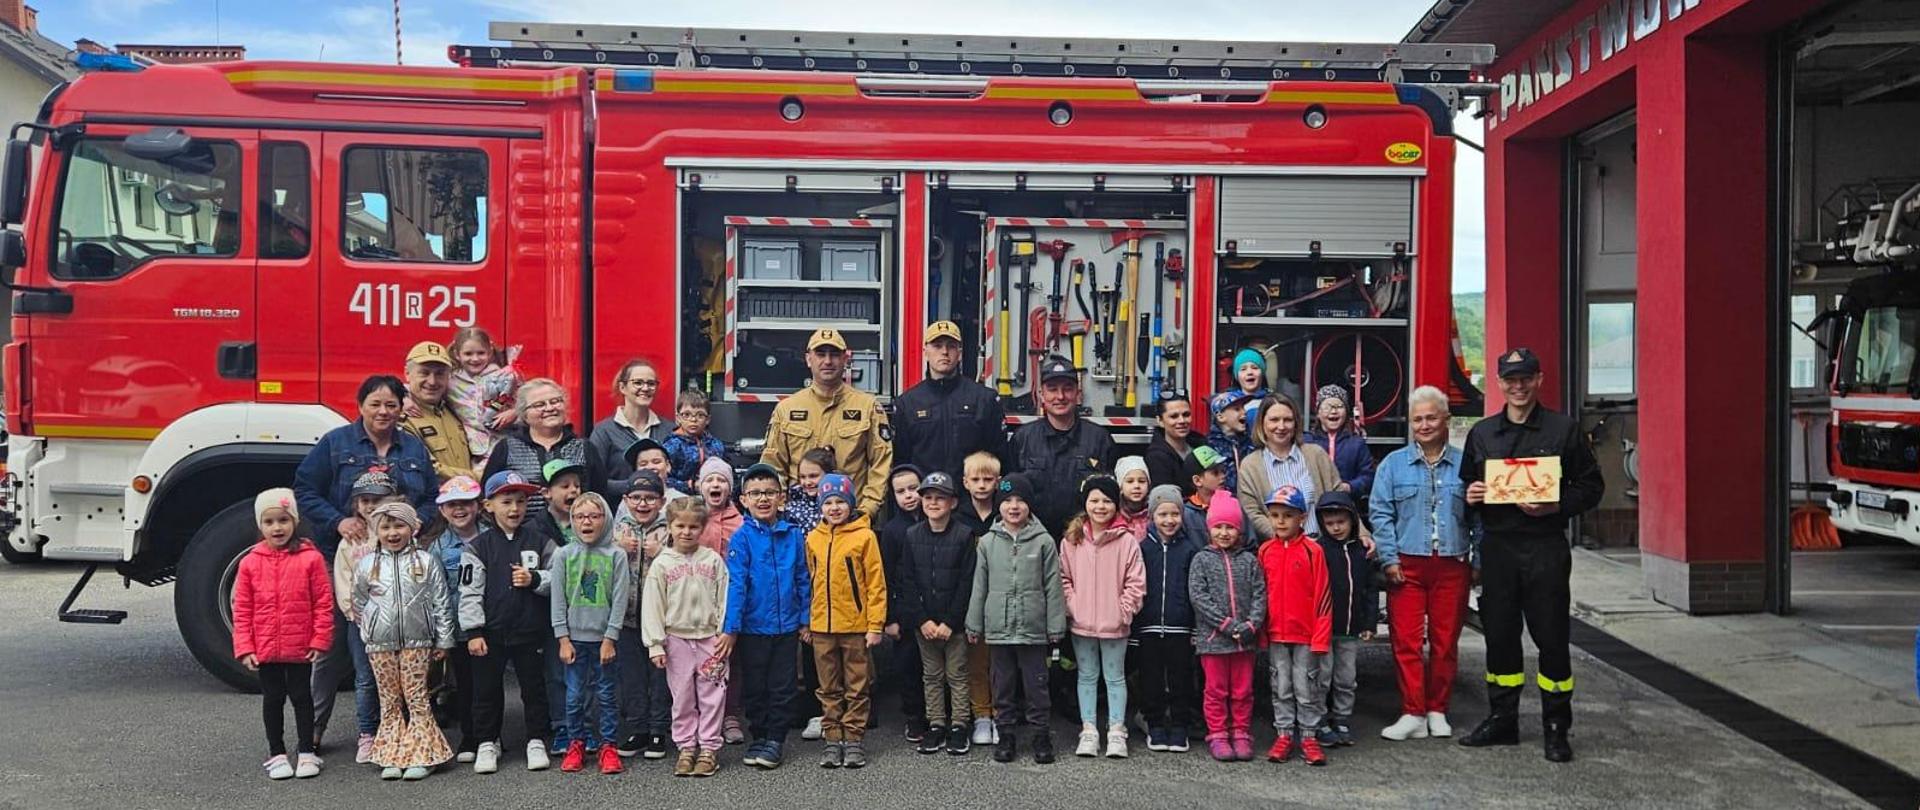 Kolorowa fotografia wykonana na zewnątrz w pogodny dzień. Przedstawia grupę przedszkolaków, które odwiedziły strażnicę PSP oraz strażaków w ubraniach służbowych na tle samochodu pożarniczego.